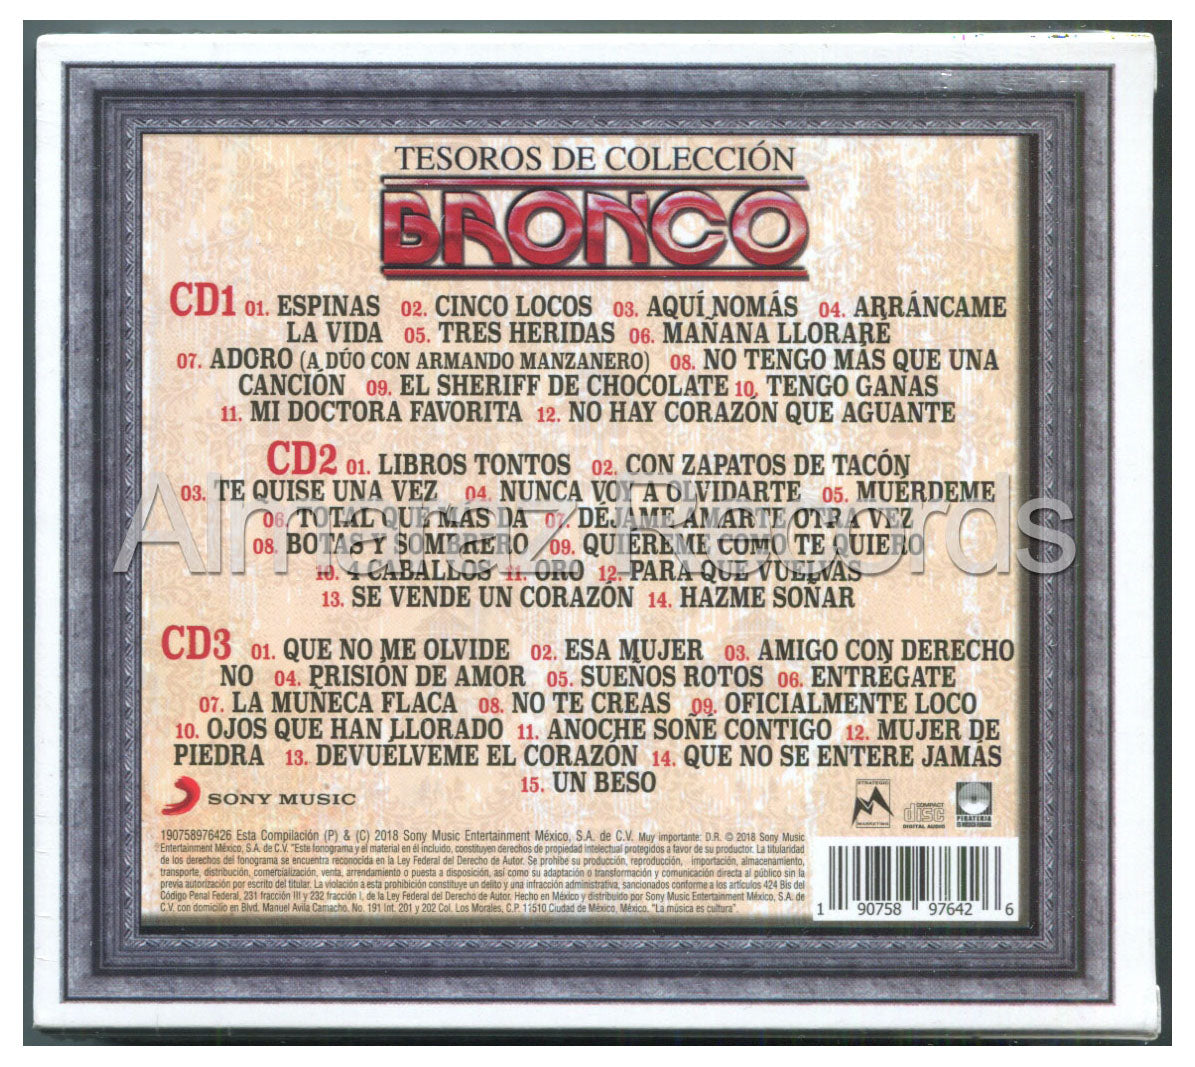 Bronco Tesoros De Coleccion Vol. 3 3CD